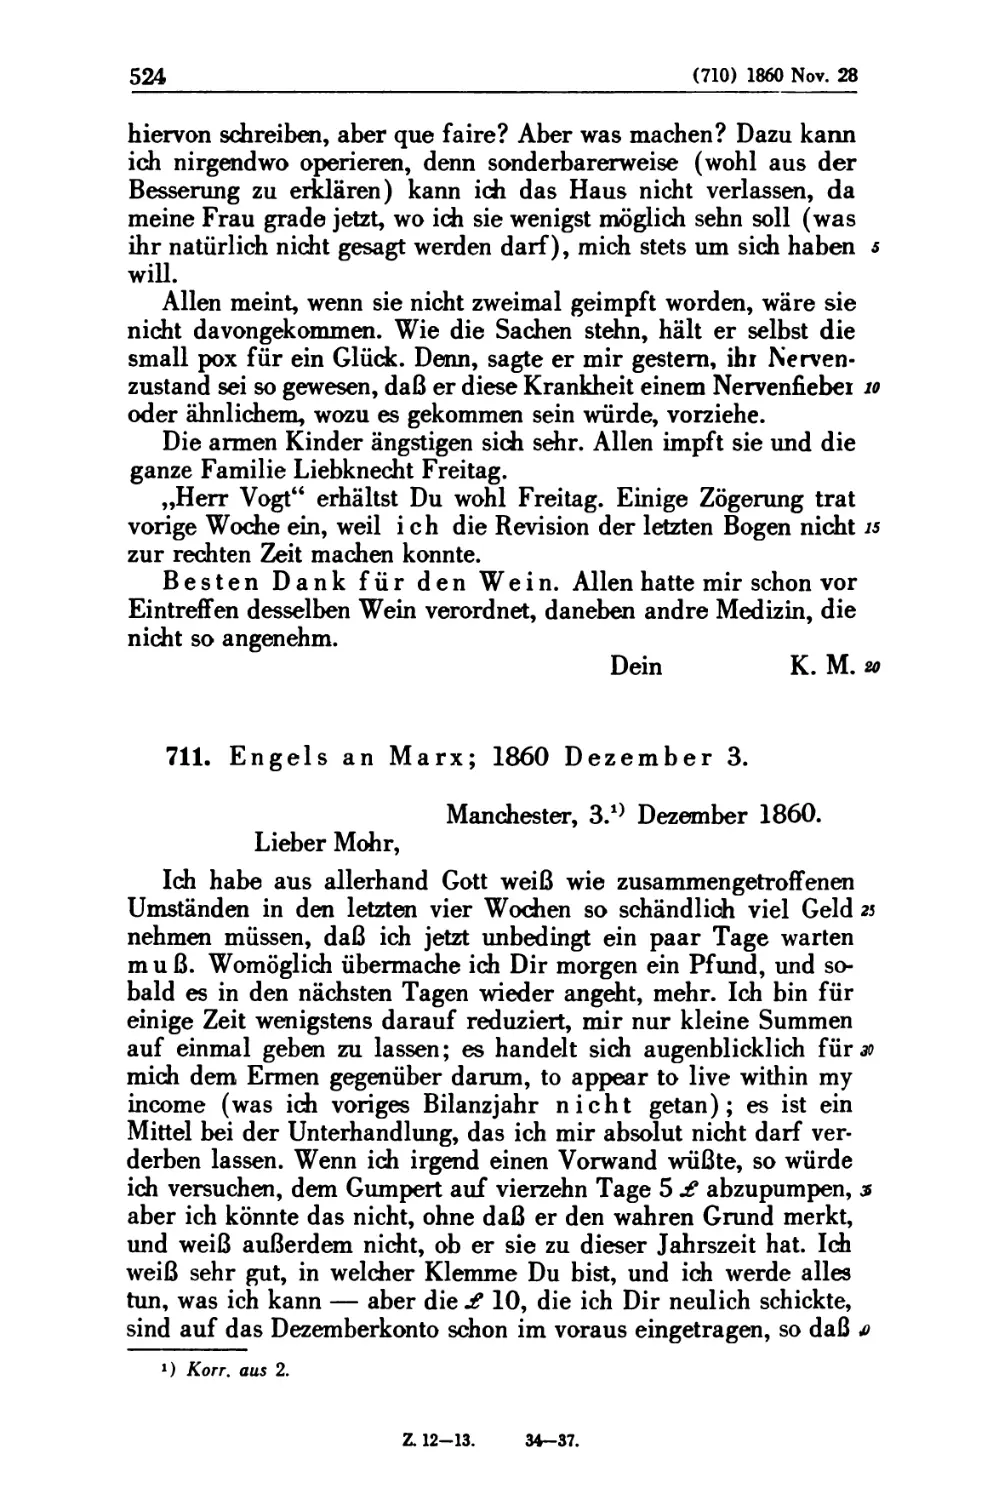 711. Engels an Marx; 1860 Dezember 3